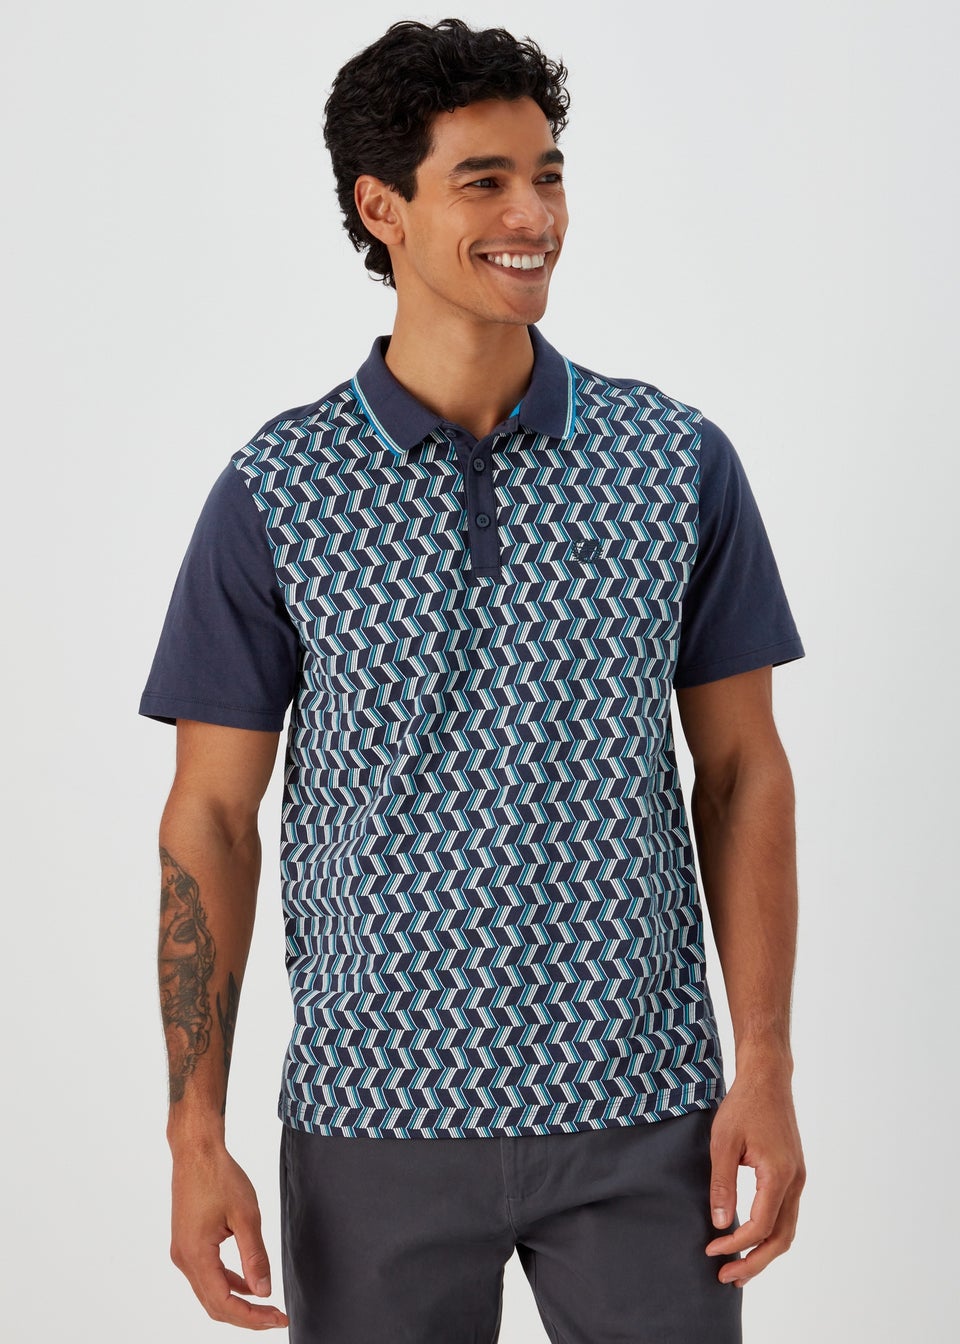 Navy & Teal Print Smart Polo Shirt